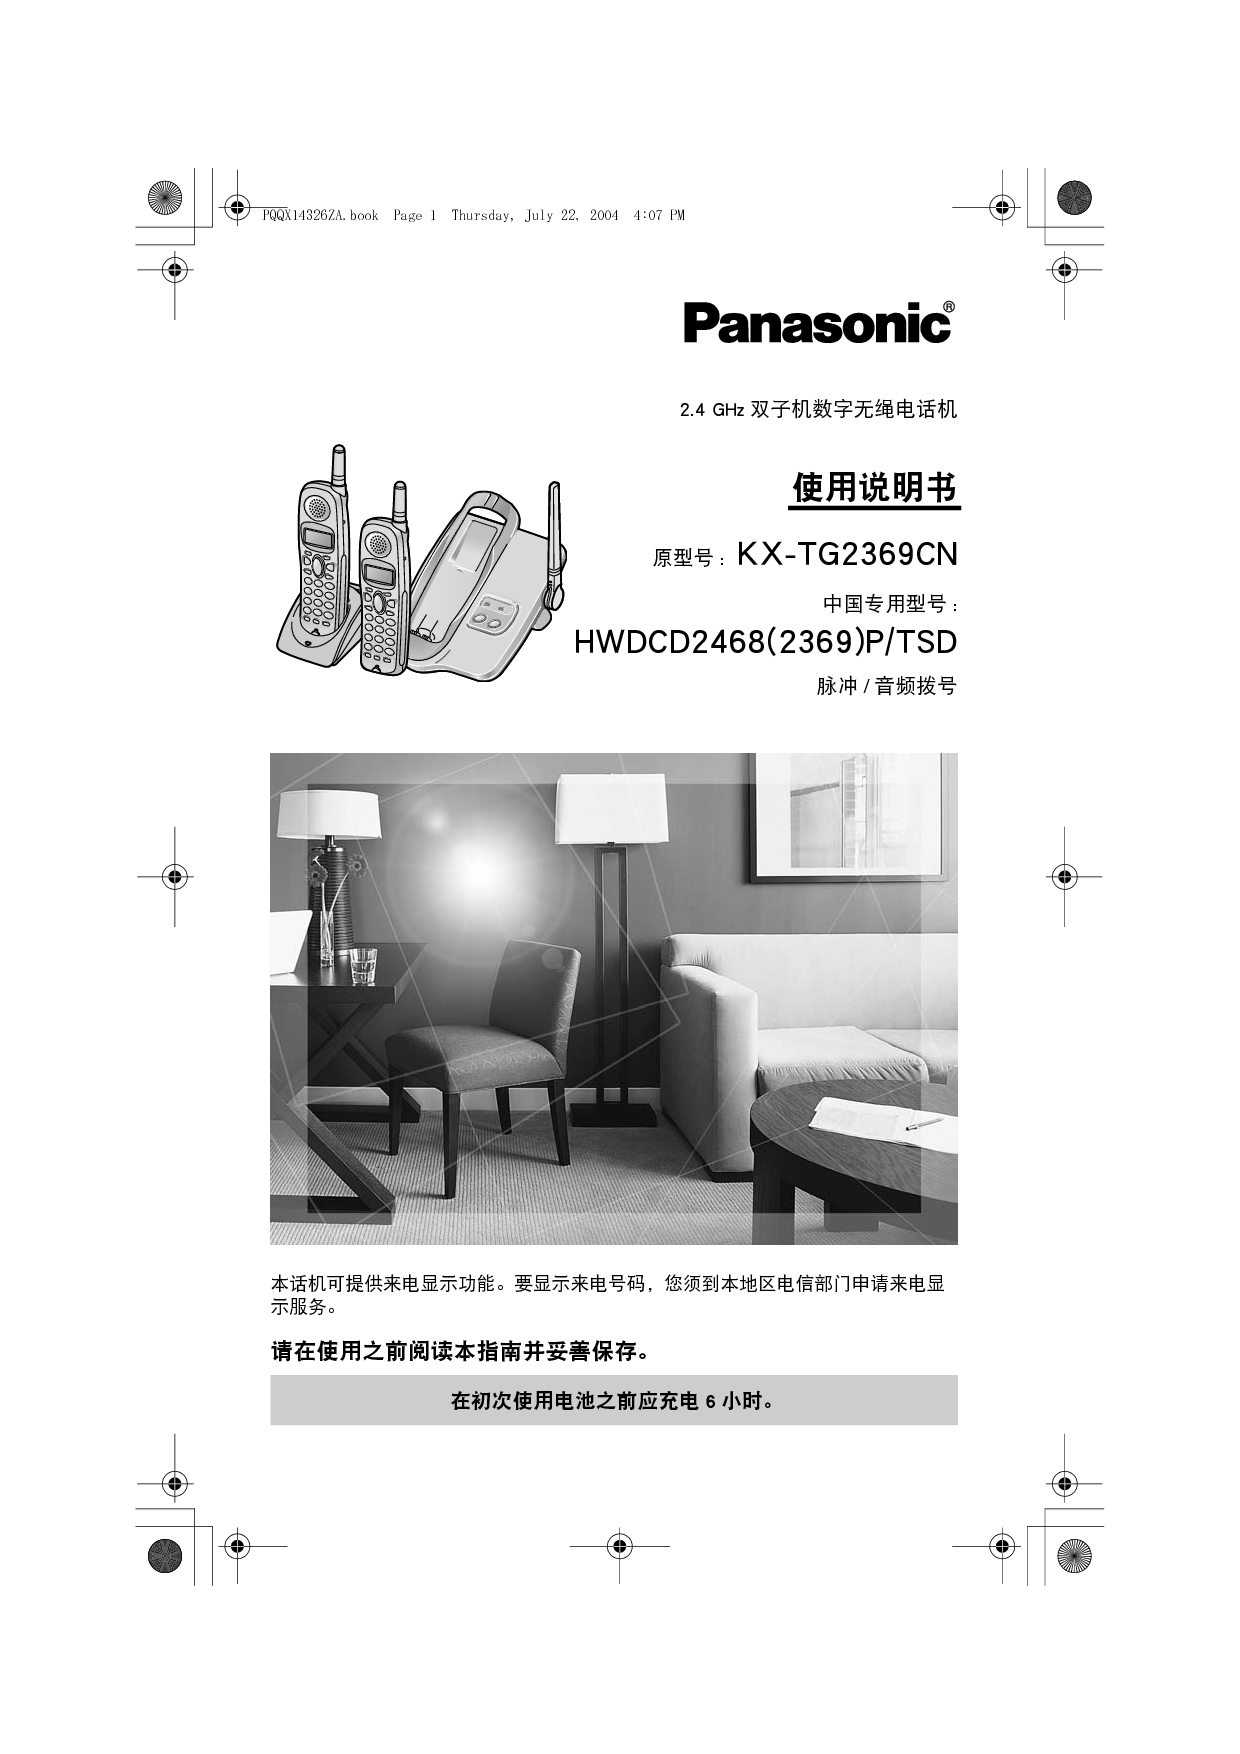 松下 Panasonic HWDCD2468(2369)P/TSD, KX-TG2369CN 说明书 封面